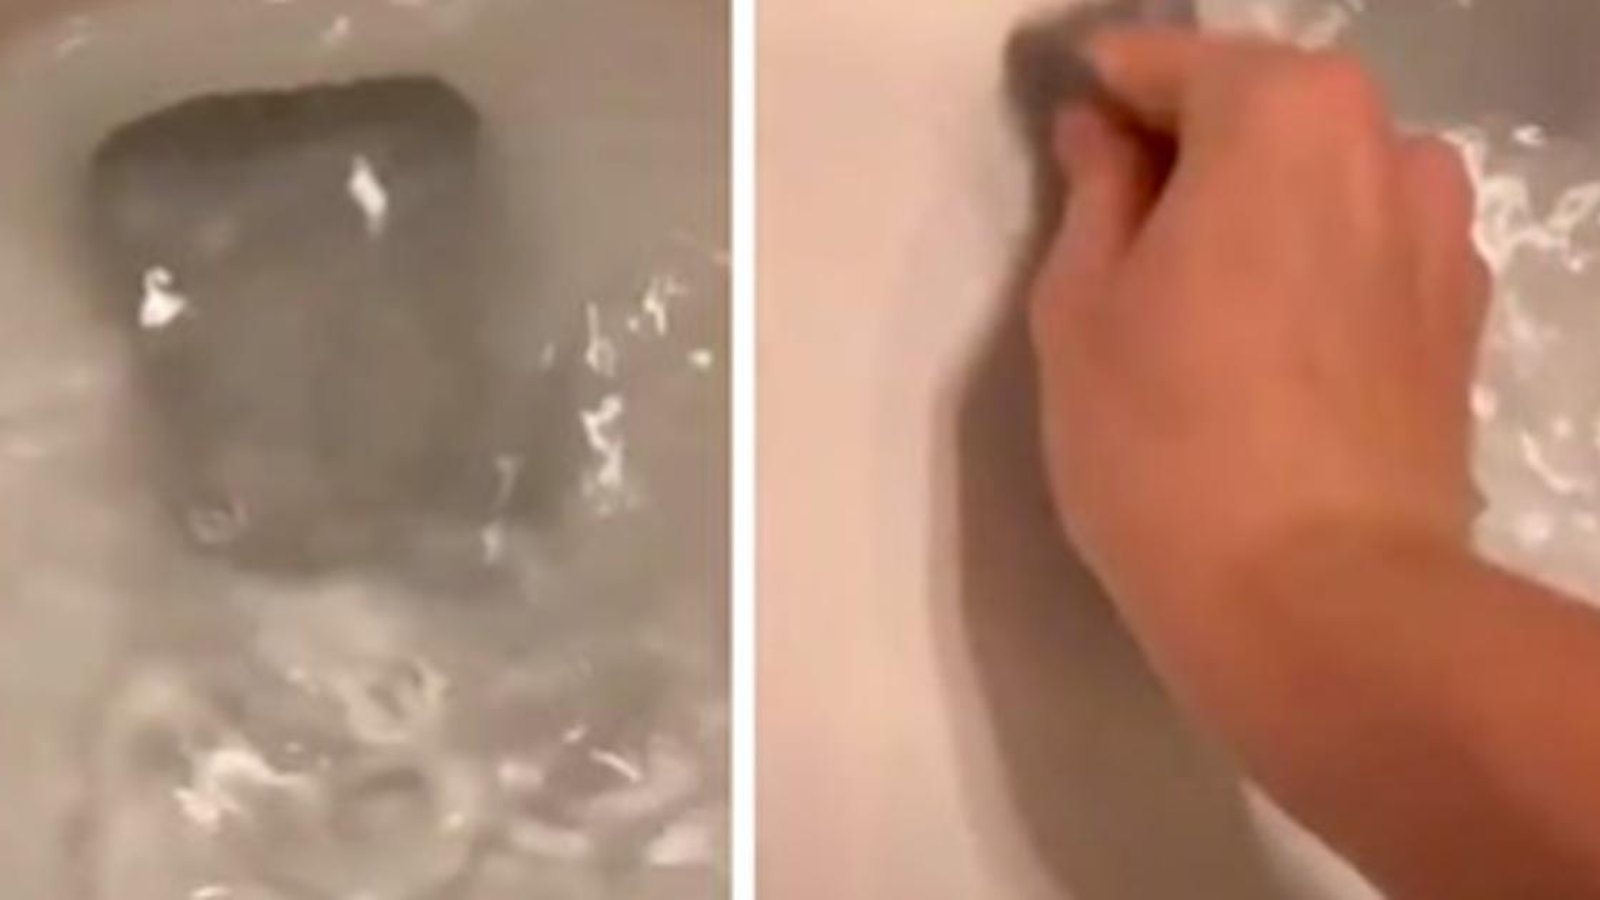 Voici un truc simple pour nettoyer les anneaux de crasse dans les toilettes